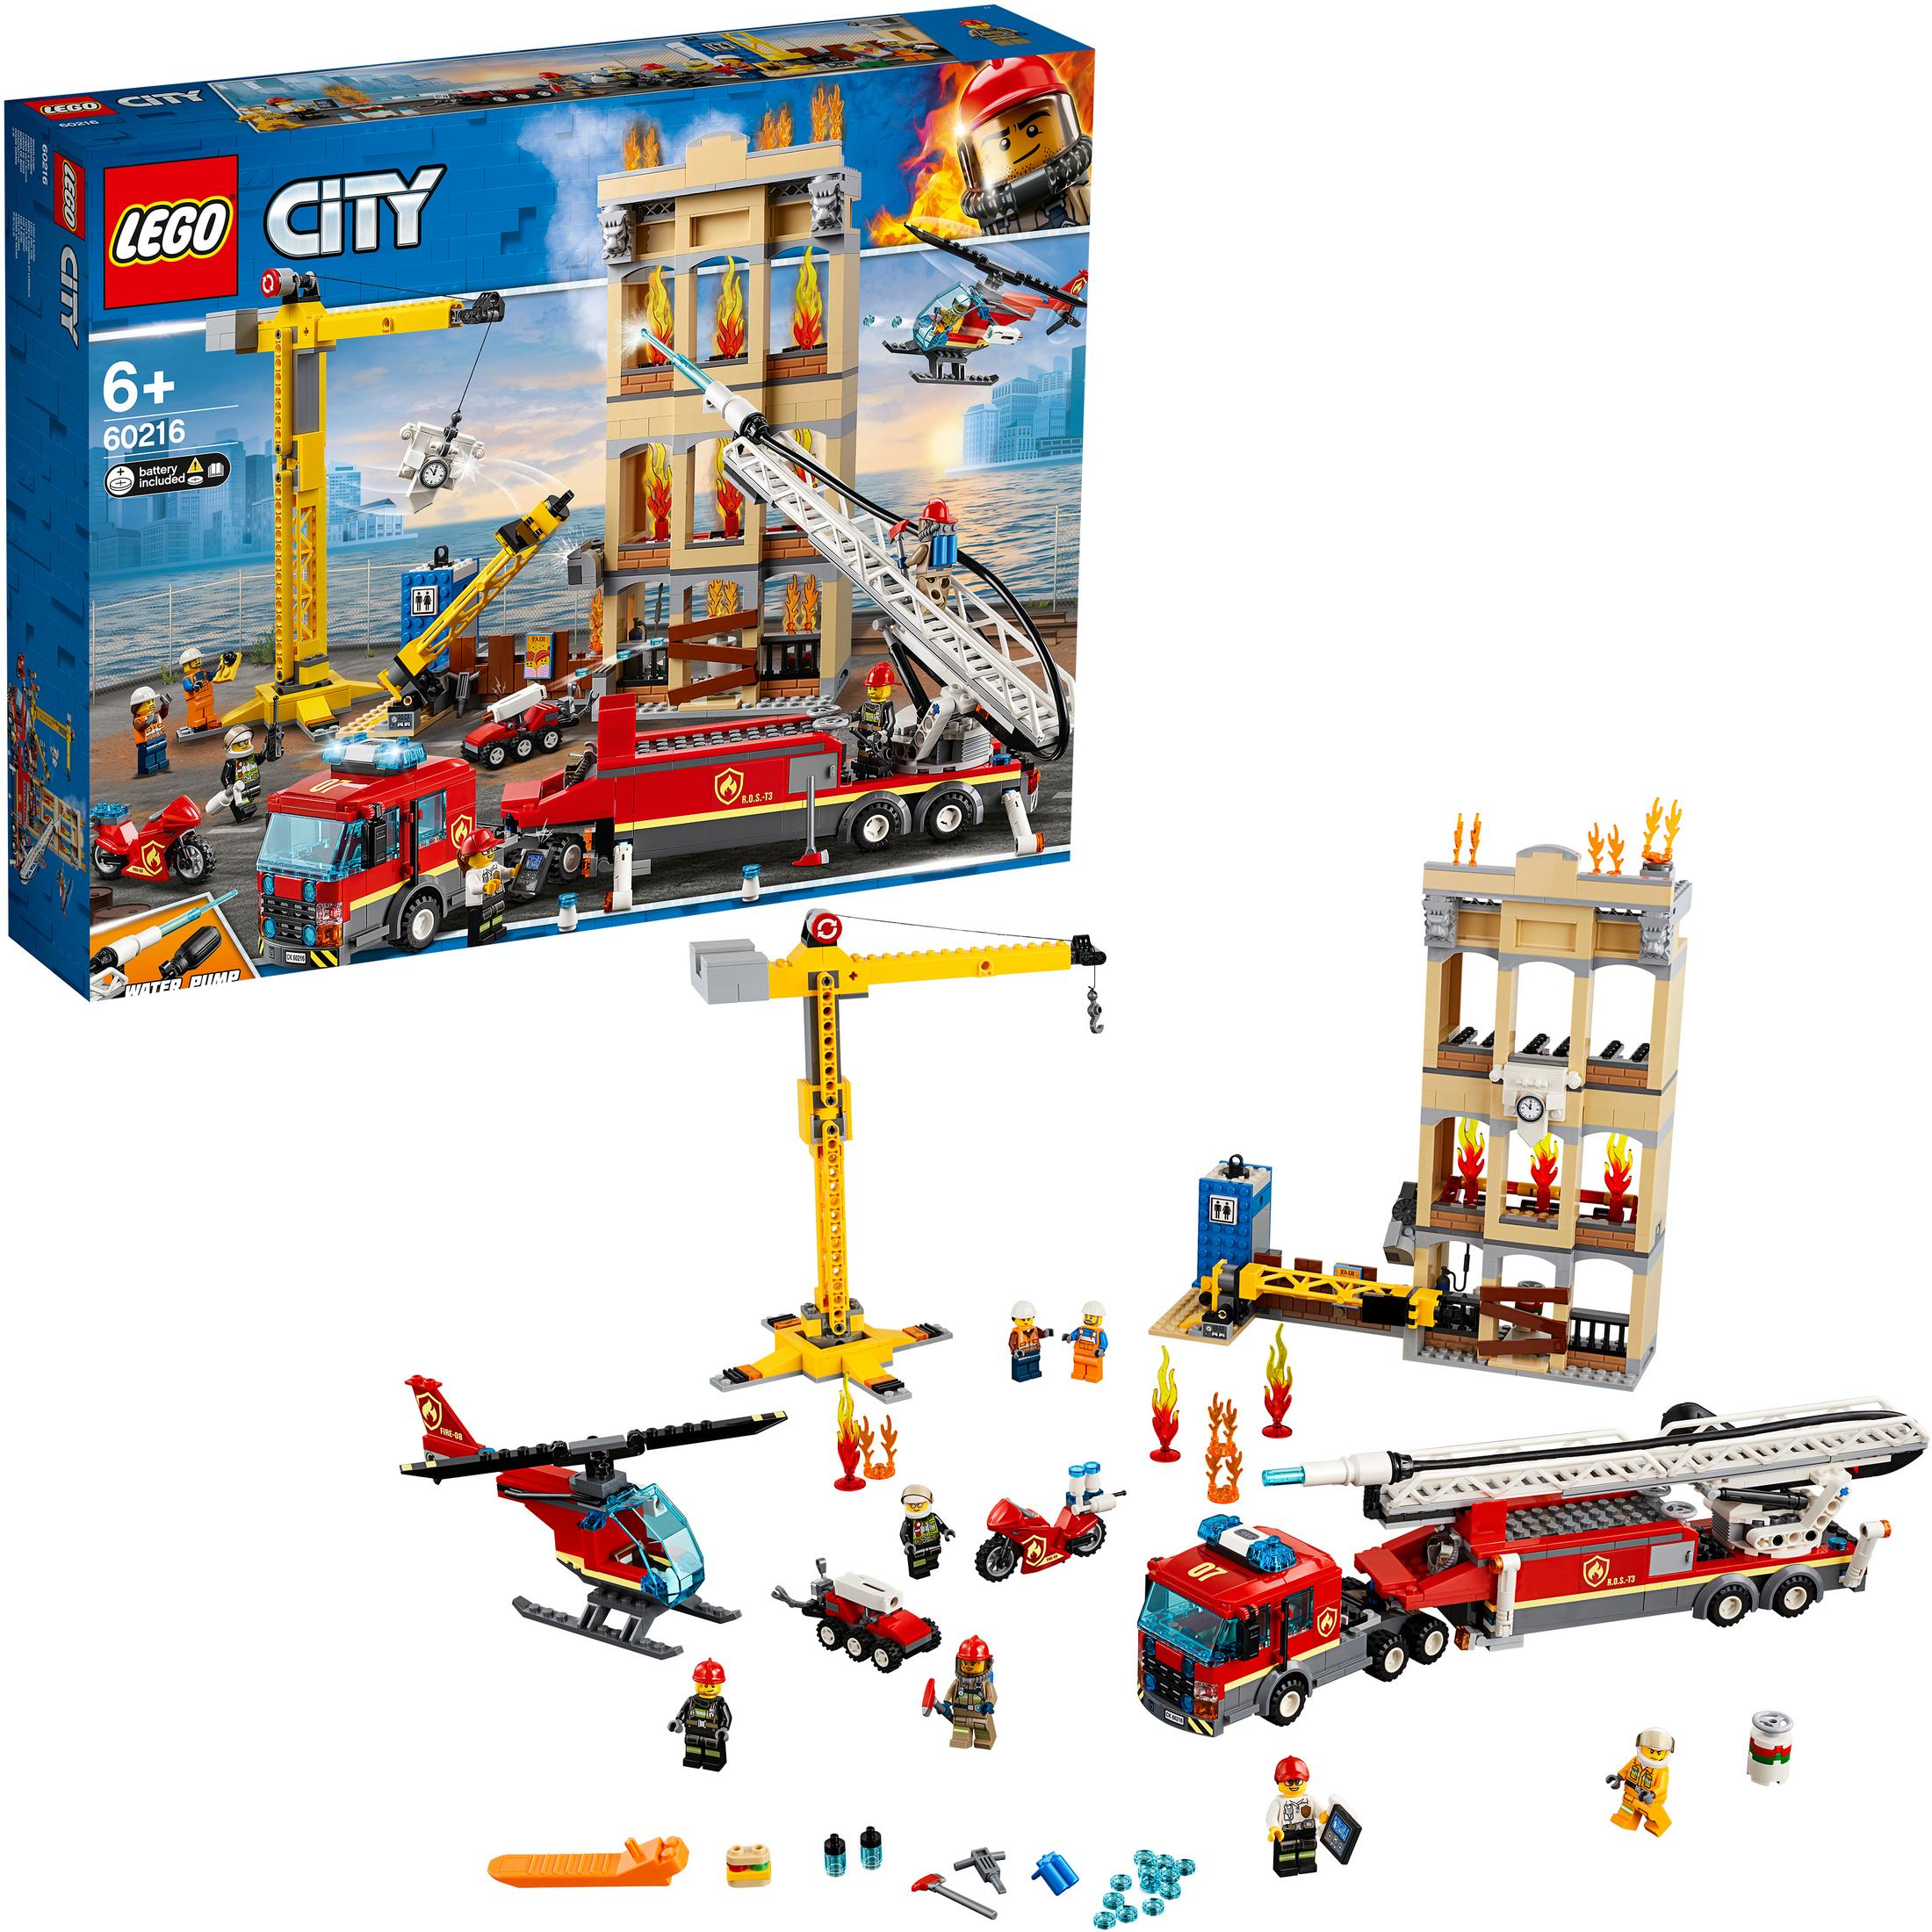 LEGO 60216 IN DER Mehrfarbig STADT Bausatz, FEUERWEHR